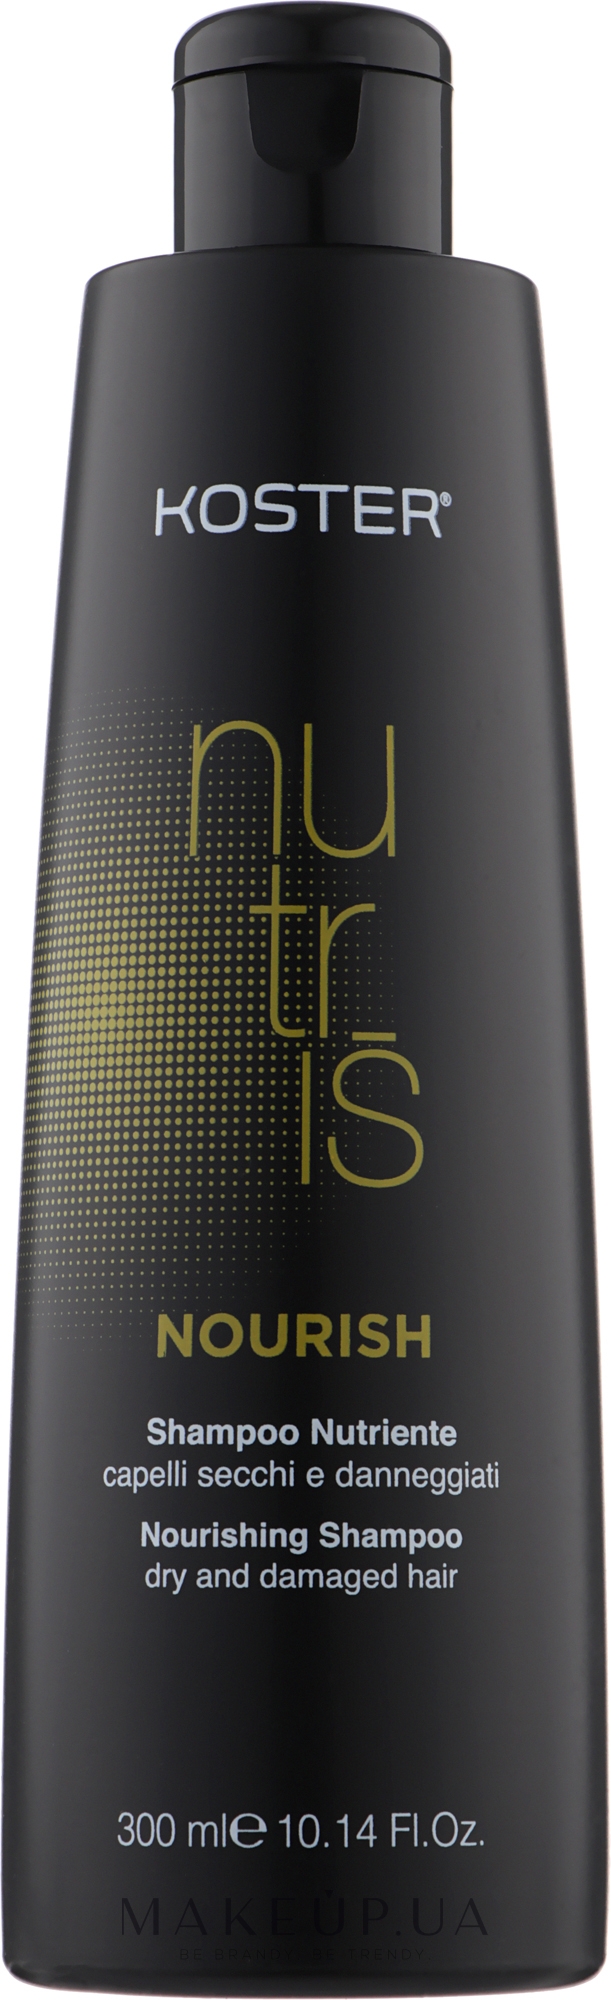 Шампунь для сухих и поврежденных волос - Koster Nutris Nourish Shampoo — фото 300ml